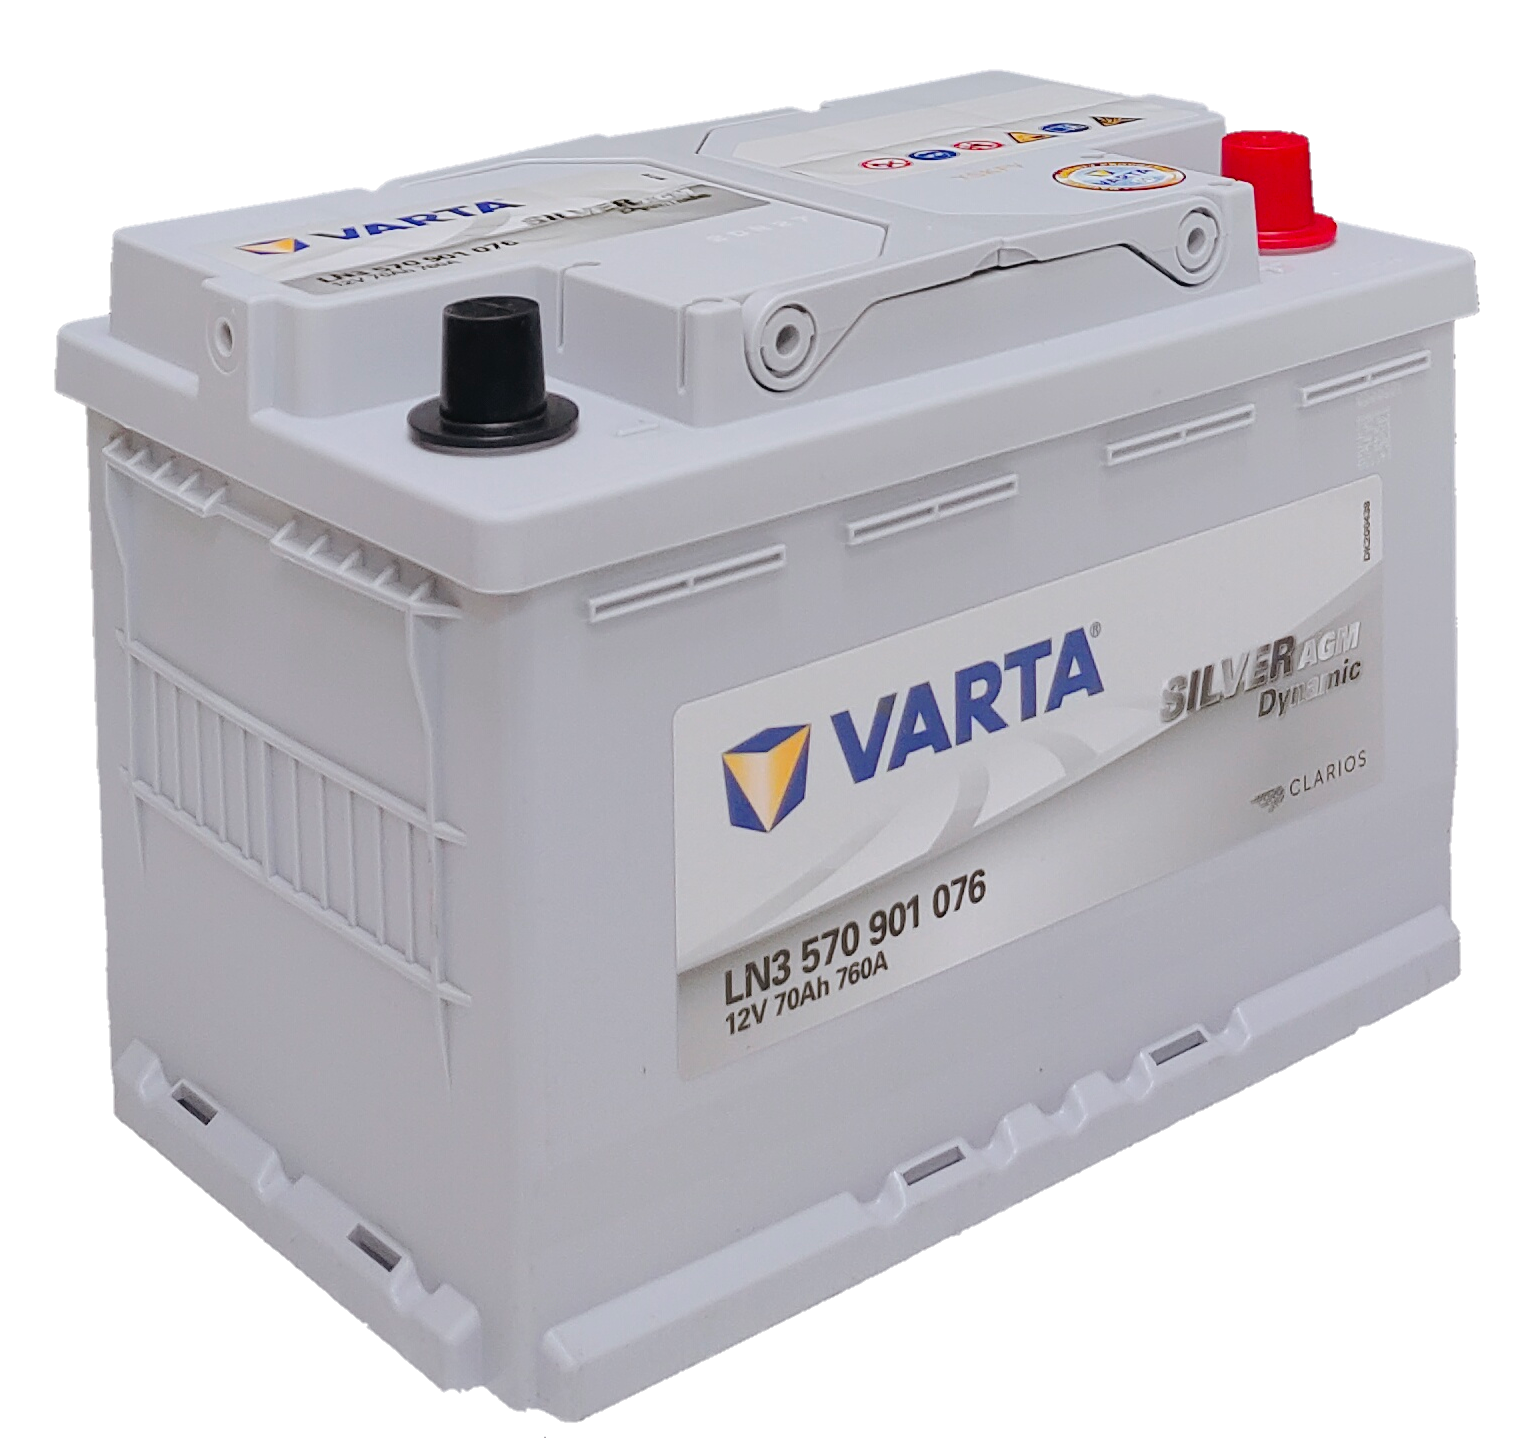 SALE品質保証570-901-076 VARTA バッテリー E39 70A フォルクスワーゲン ティグアン 新品 ヨーロッパ規格